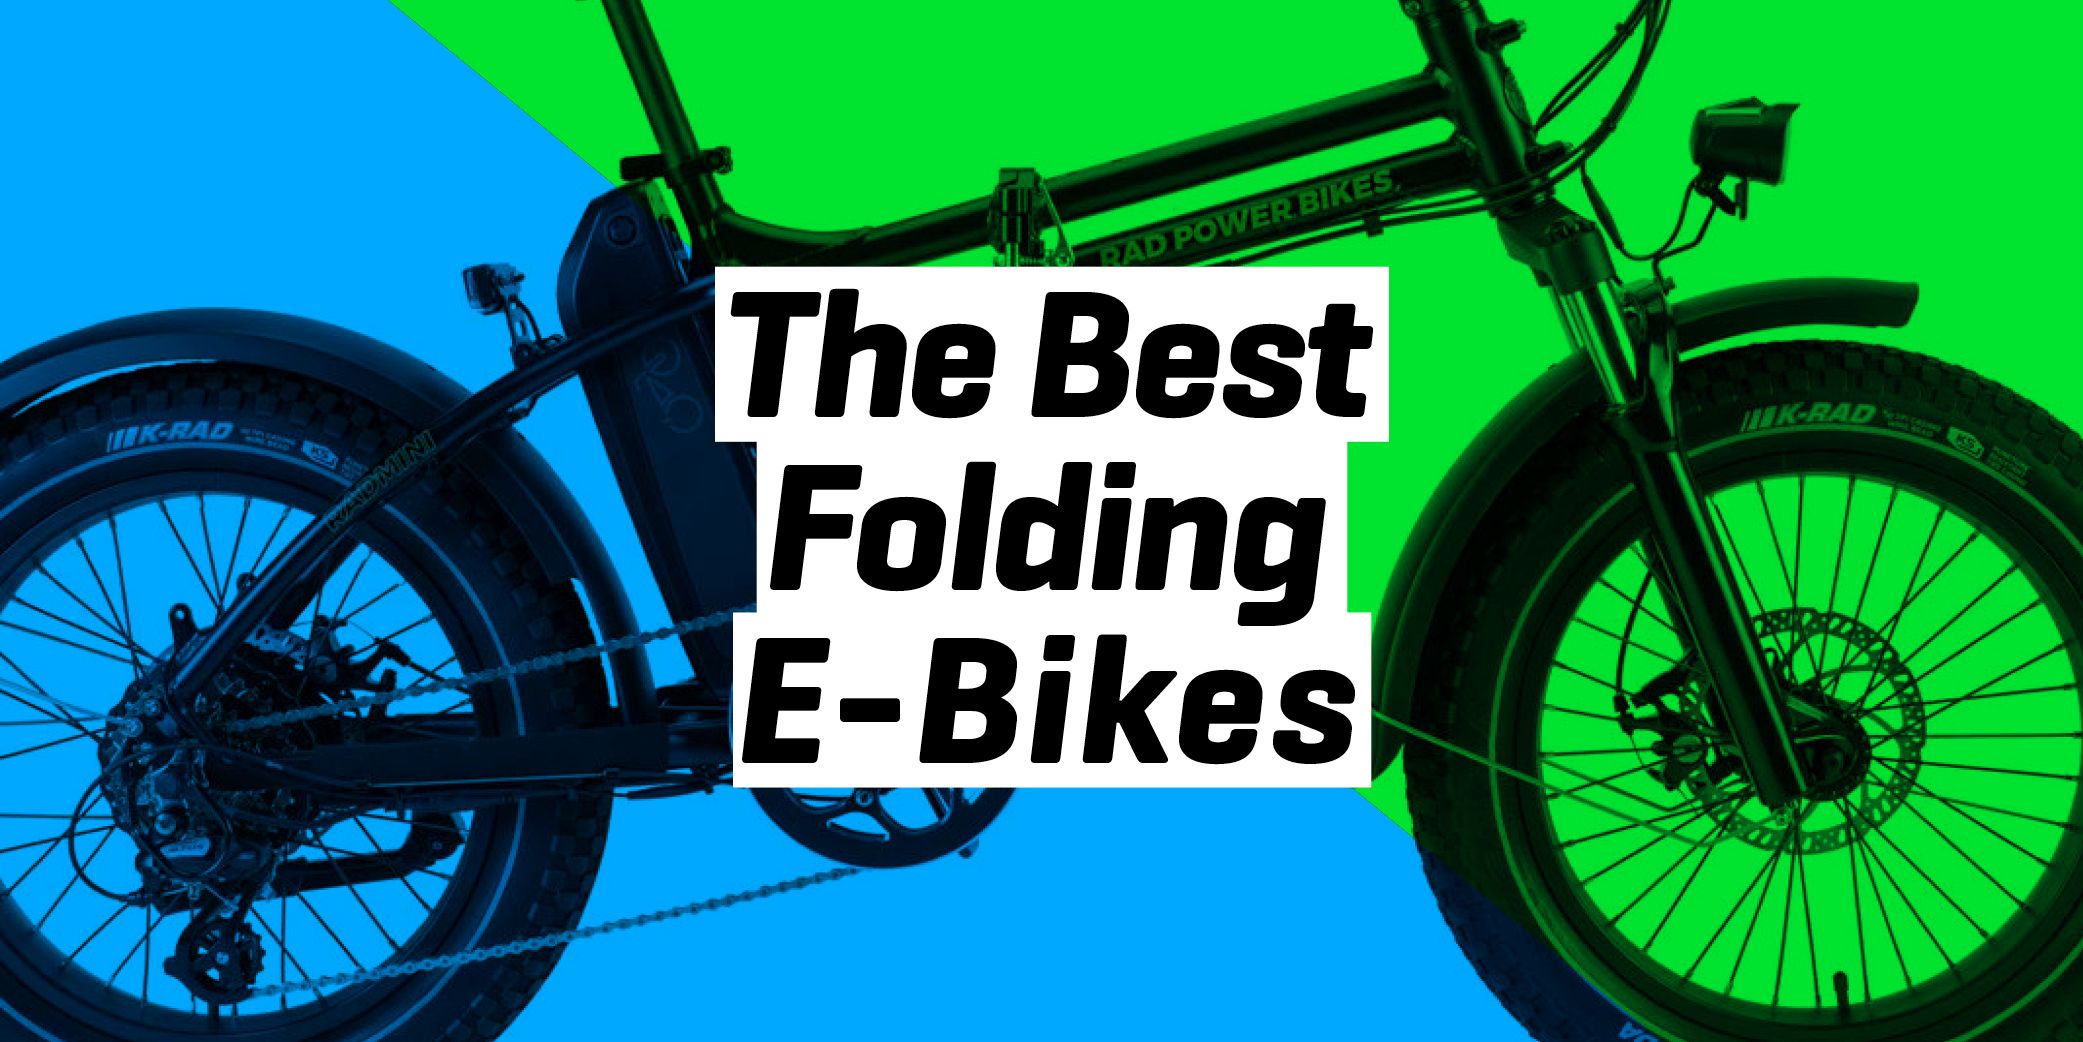 dyson folding electric bike review